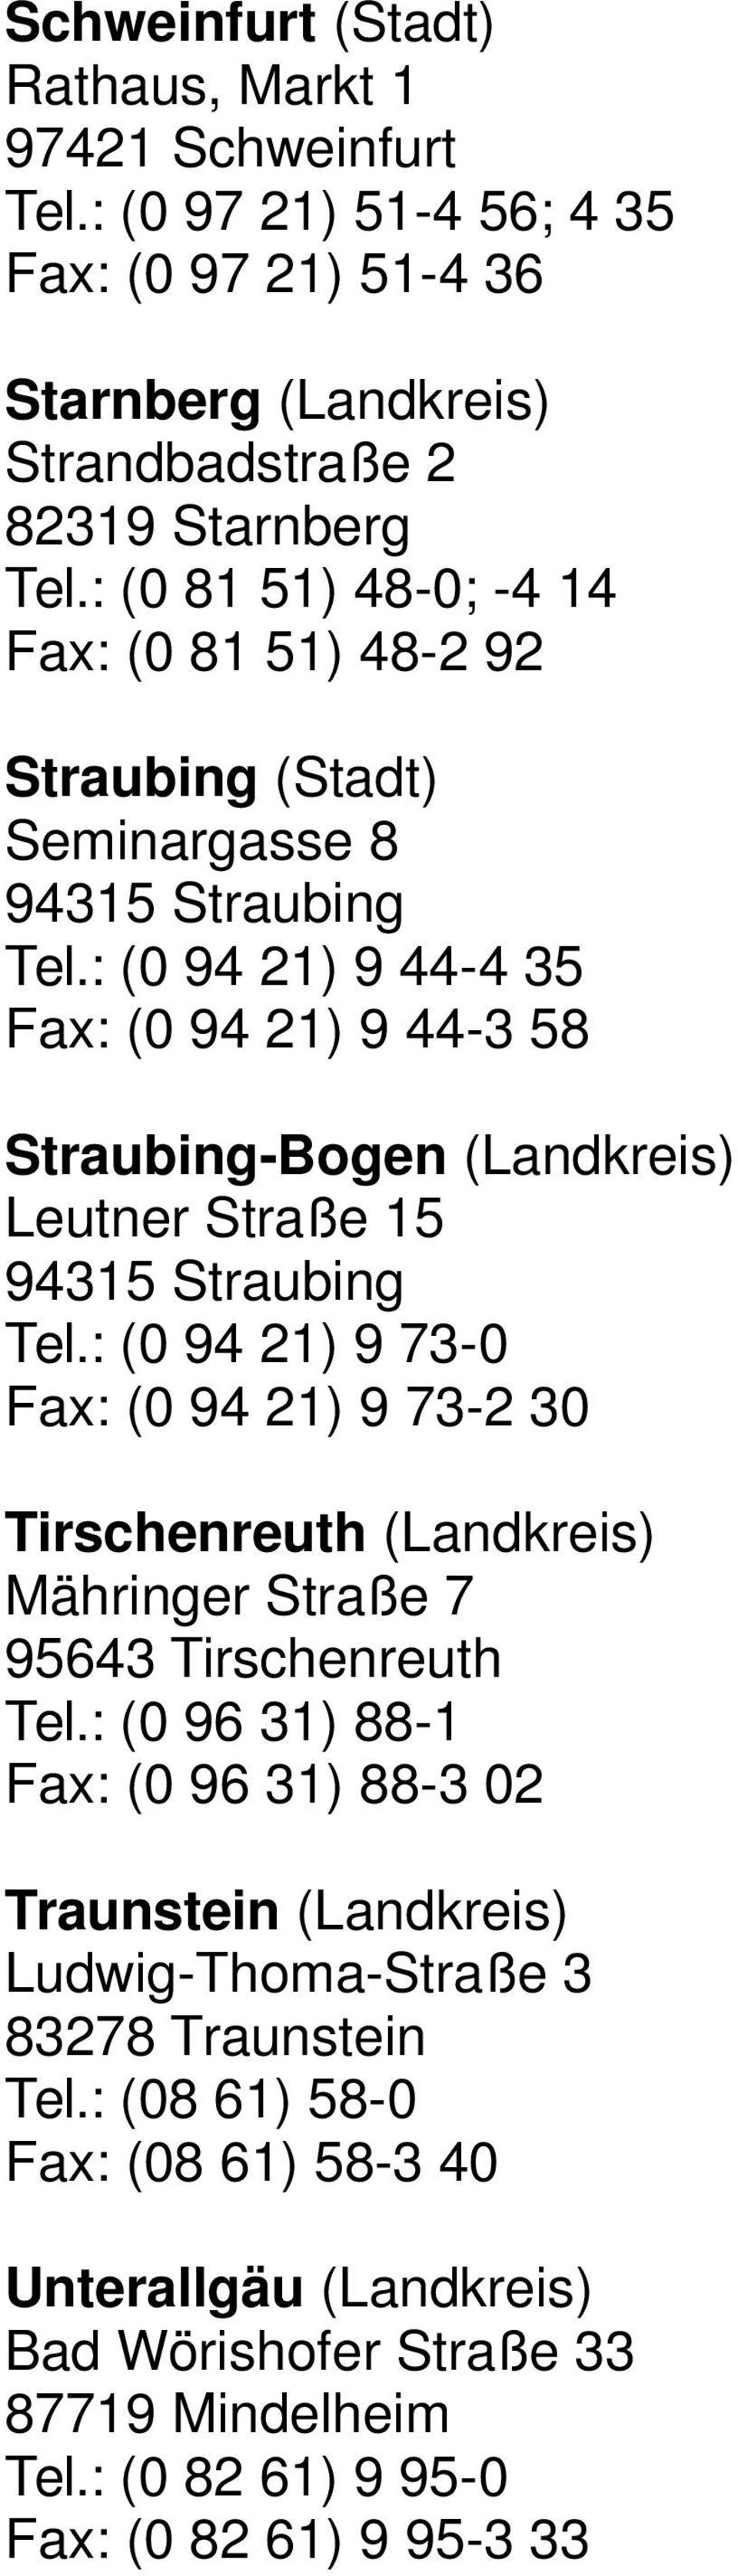 : (0 94 21) 9 44-4 35 Fax: (0 94 21) 9 44-3 58 Straubing-Bogen (Landkreis) Leutner Straße 15 94315 Straubing Tel.